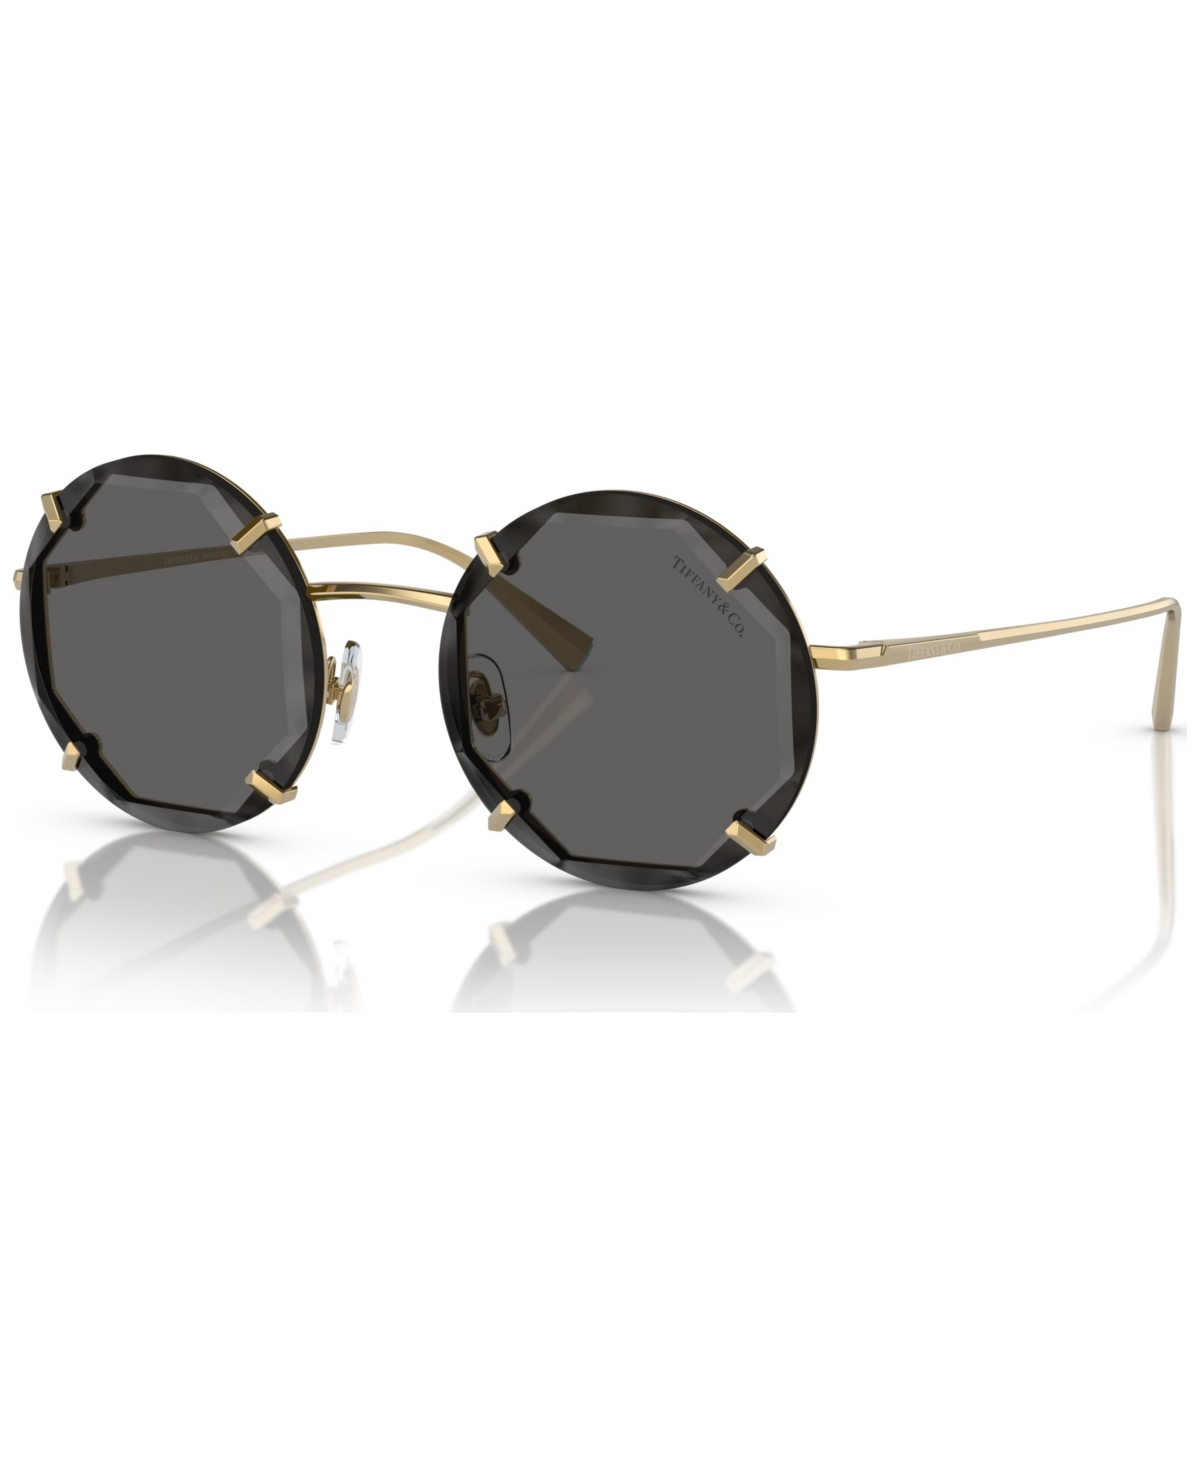 Tiffany & Co Women's 52 Sunglasses, Tf3091 In Gold-tone